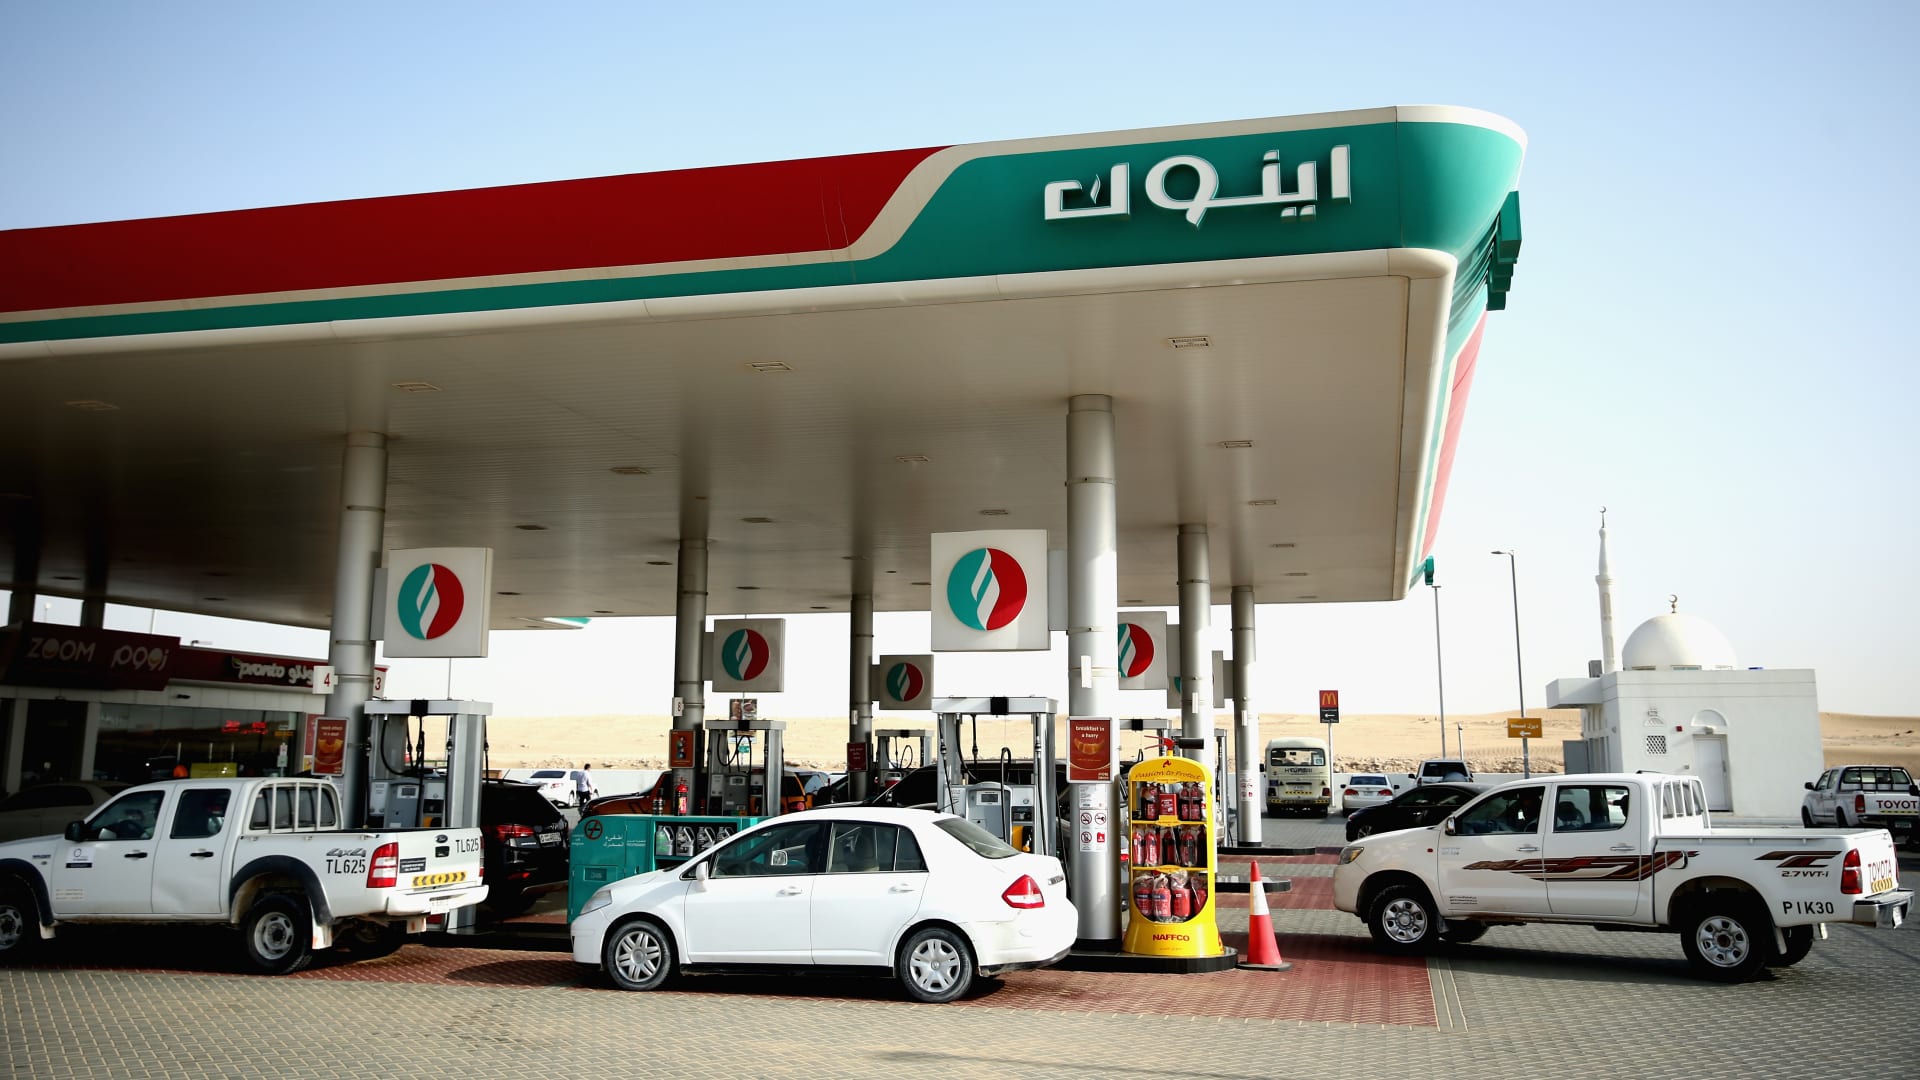 تم التقاط صورة لمحطة وقود إينوك في 6 سبتمبر 2015 في دبي ، الإمارات العربية المتحدة.